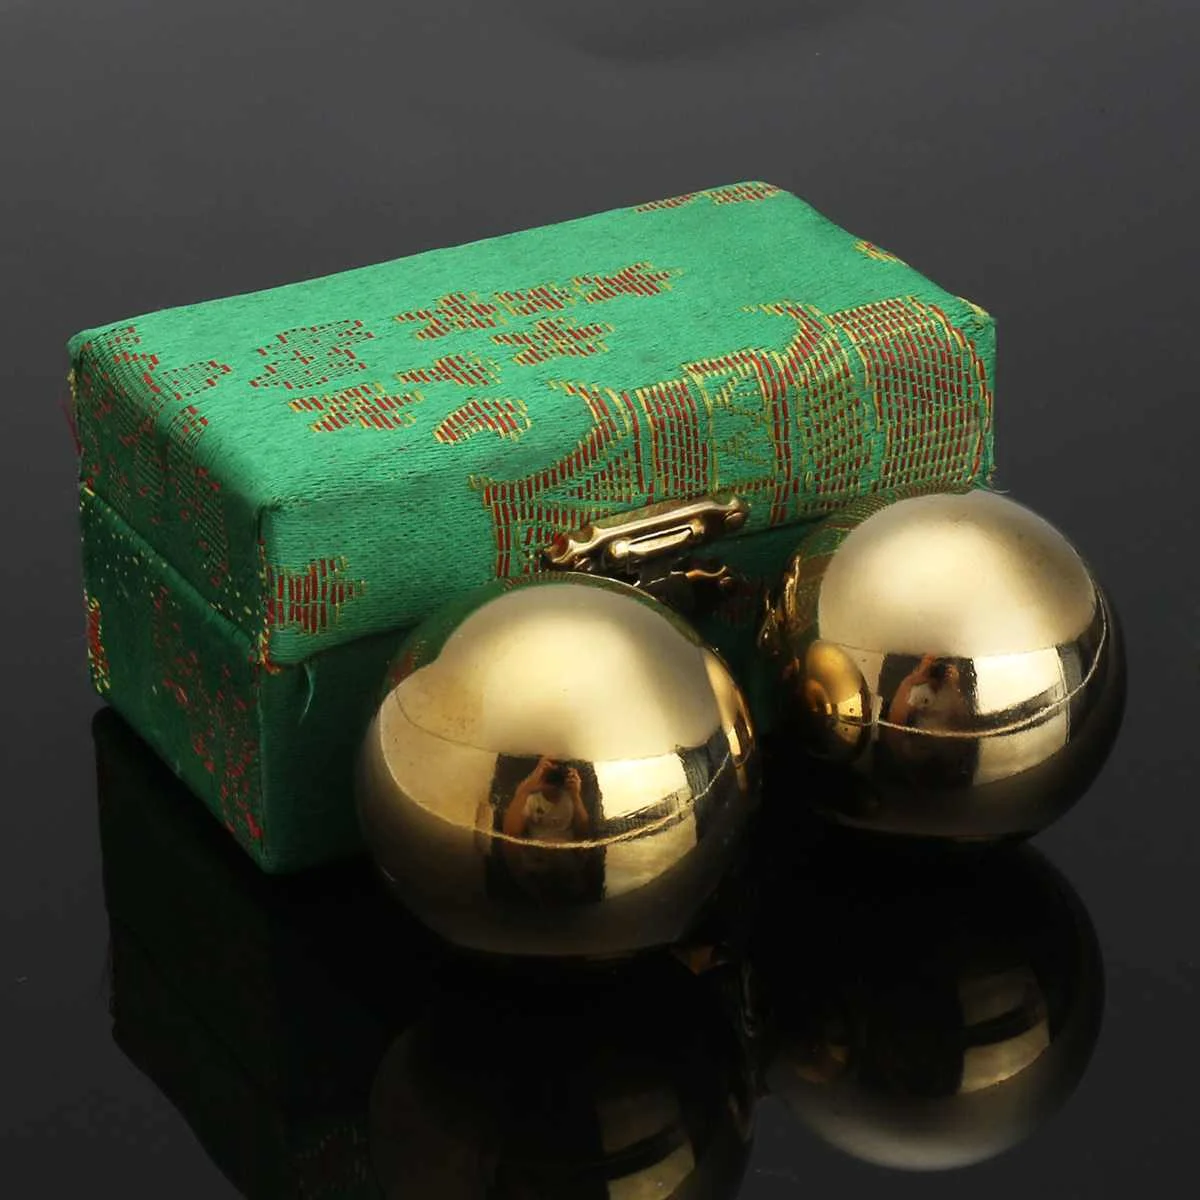 

2 шт 42 мм Диаметр металлические шарики baoding с кольцом Тон Фитнес китайские шары для здоровья массаж рук мяч случайный цвет коробка